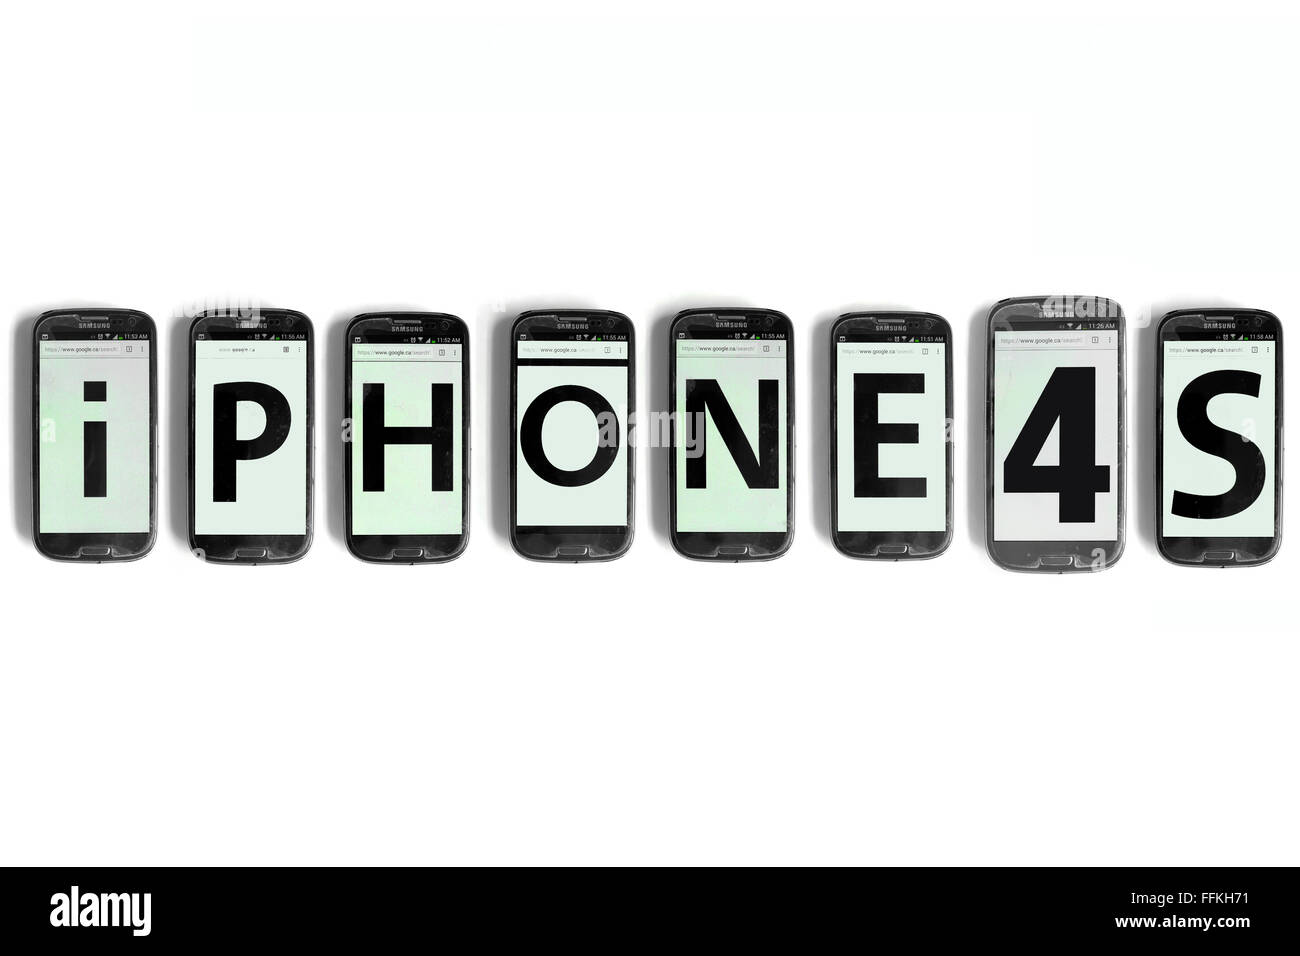 iPhone4s geschrieben am Smartphone Bildschirme vor weißem Hintergrund fotografiert. Stockfoto